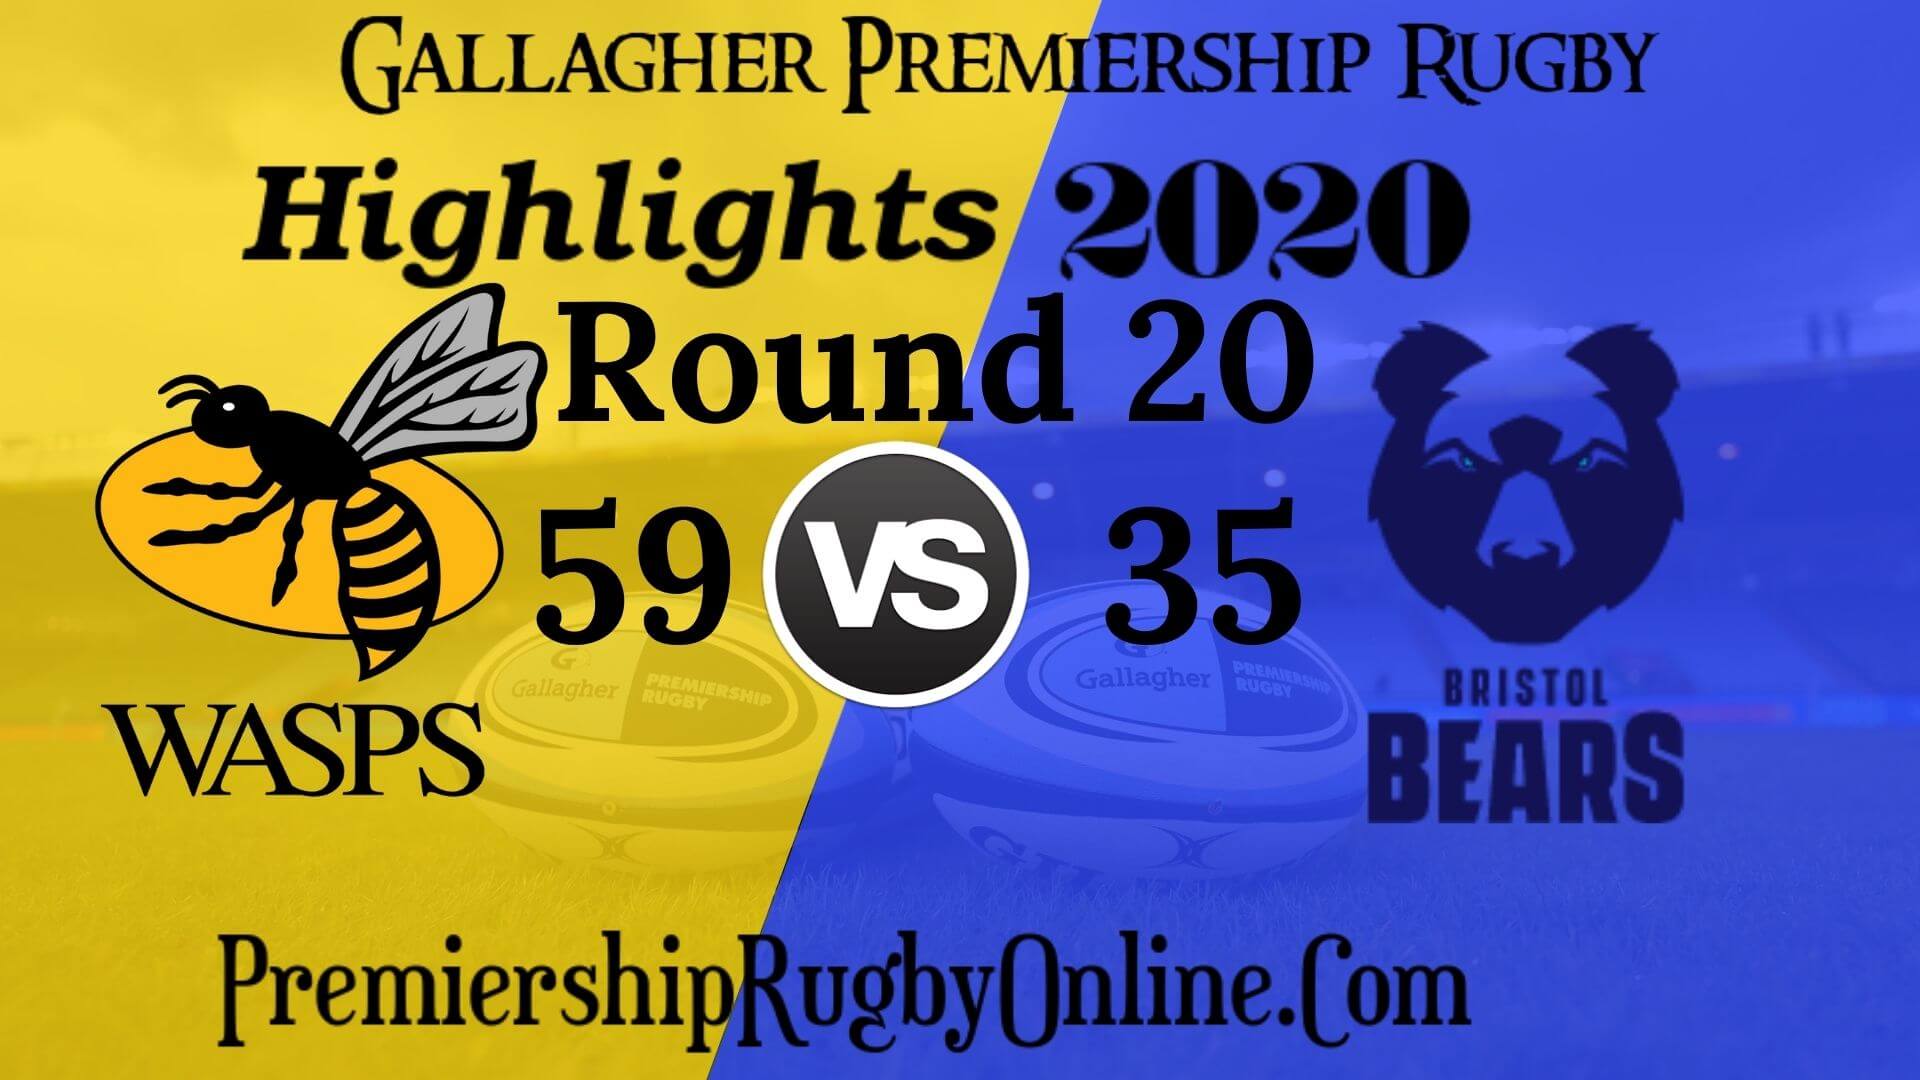 Wasps vs Bristol Bears Highlights 2020 RD 20